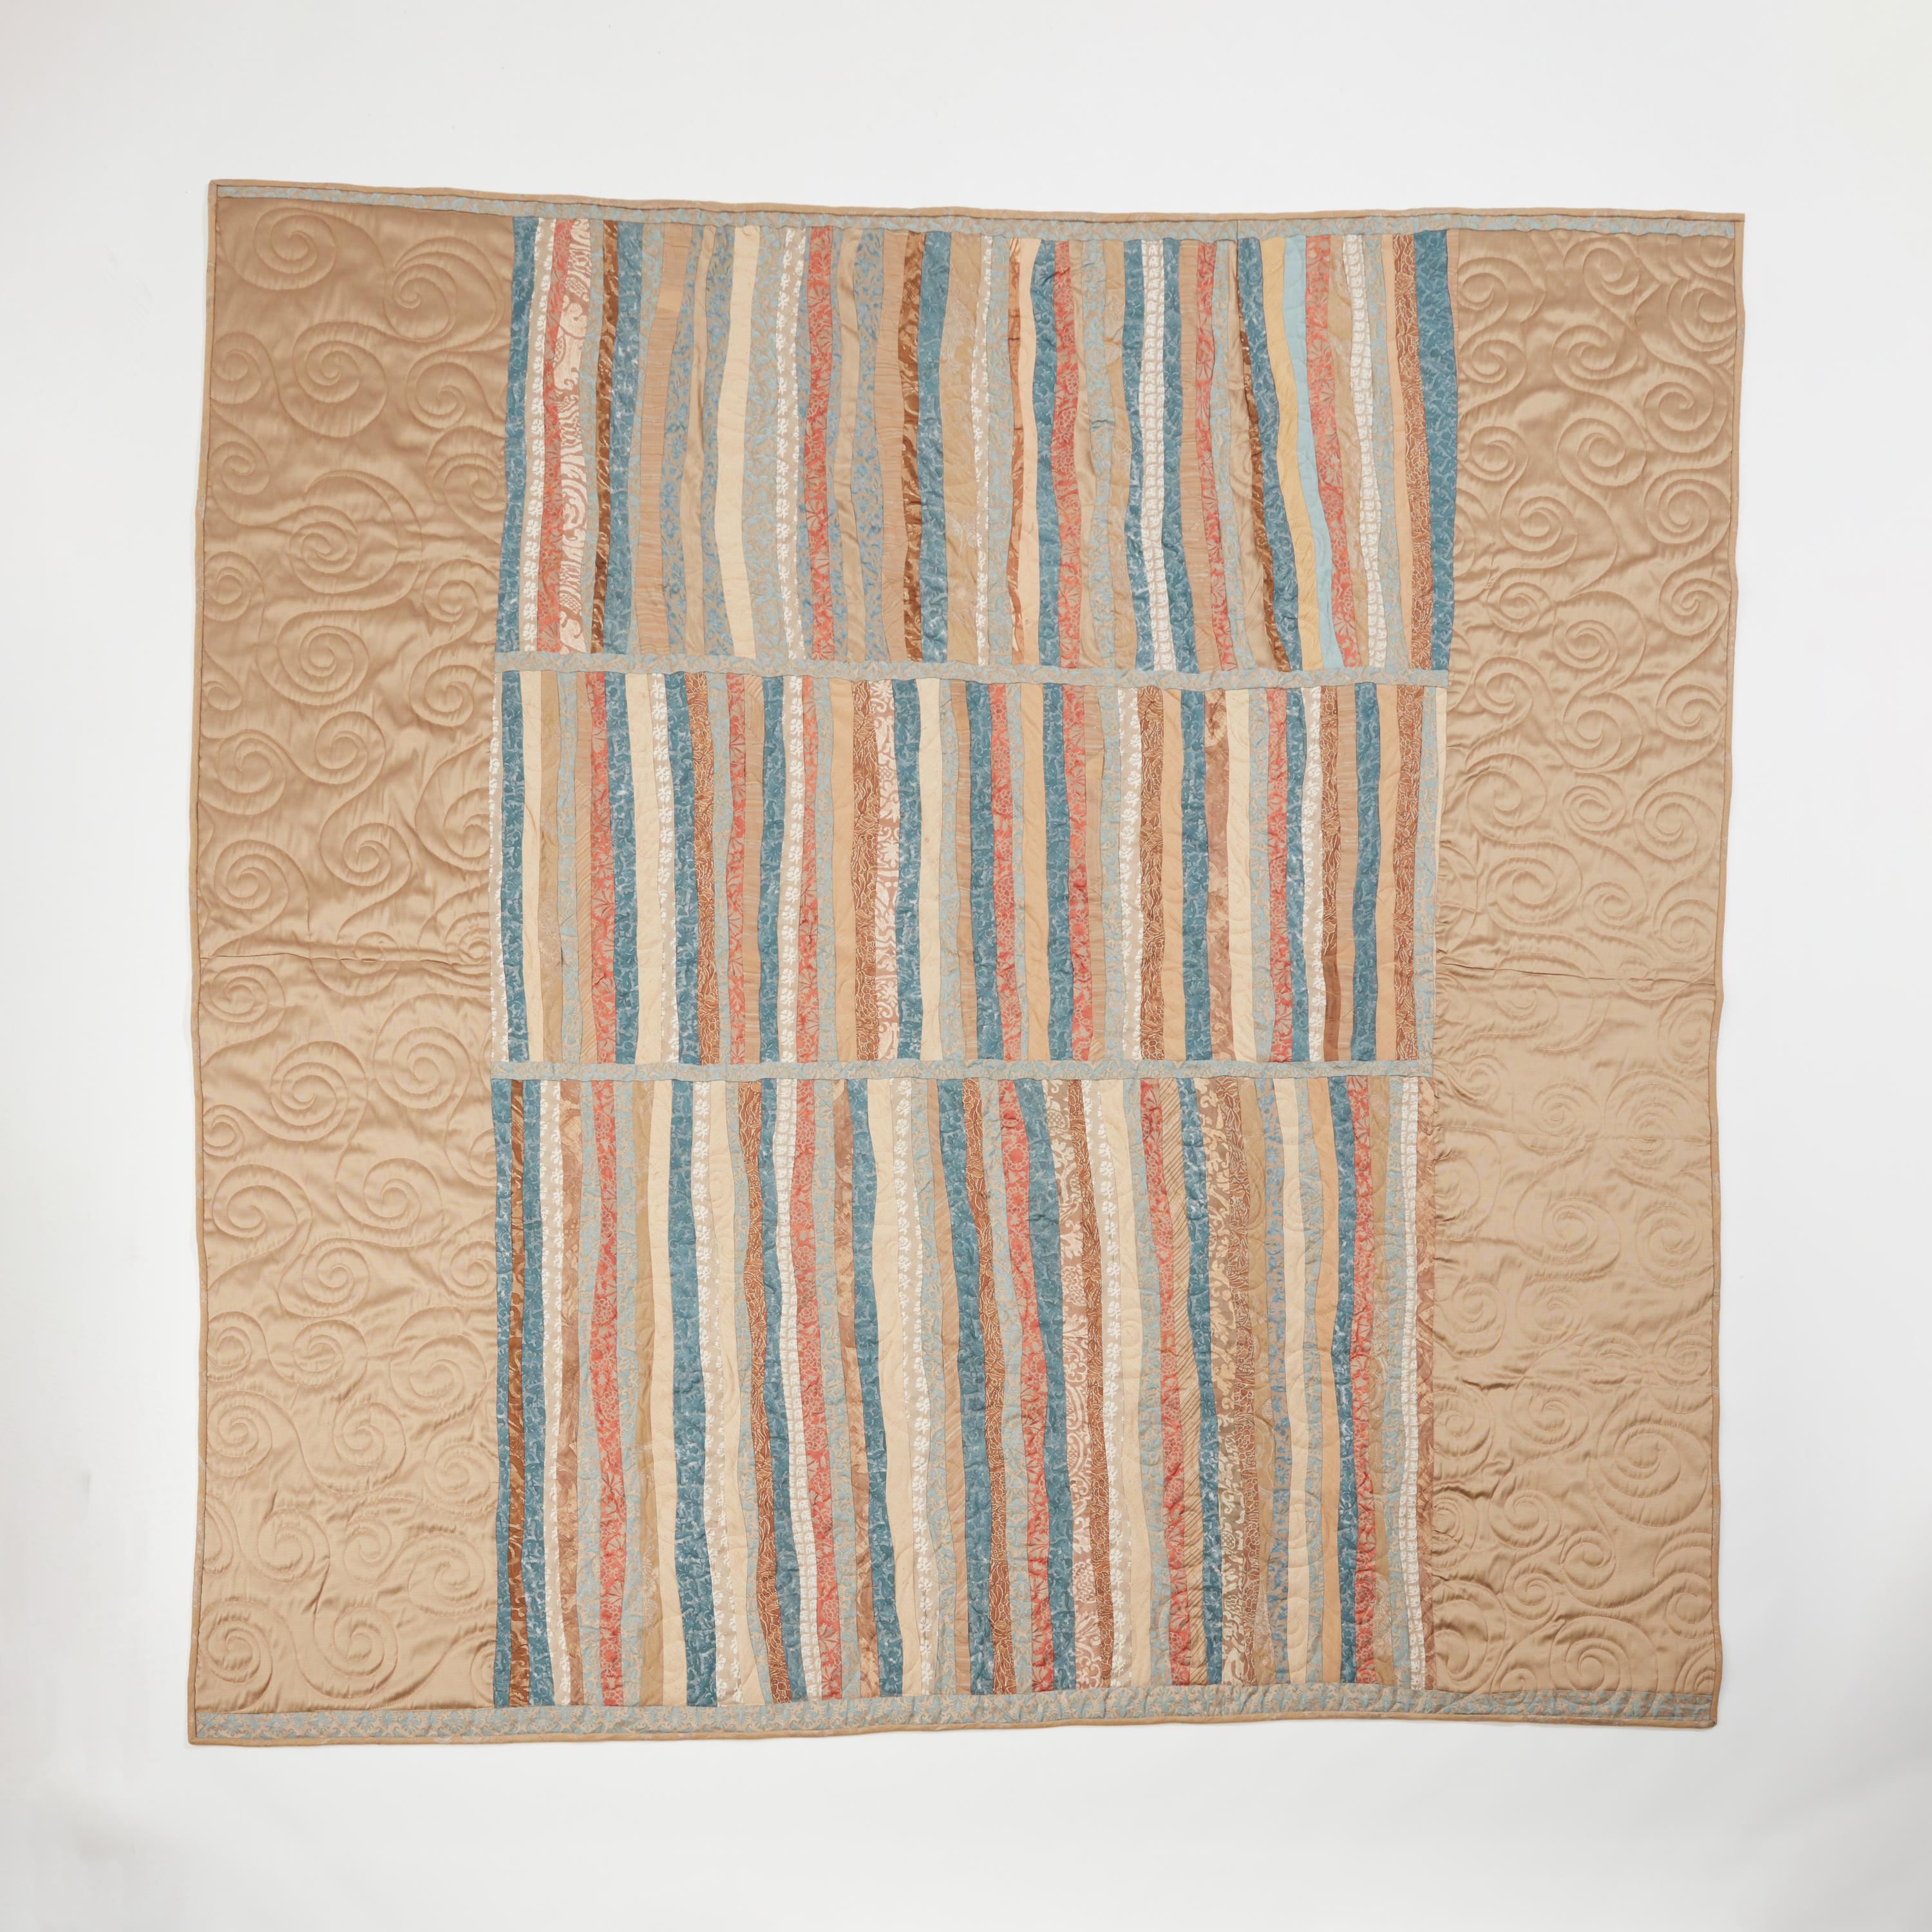 Kunsthandwerklich hergestellter Quilt aus altem Fortuny-Stoff, dessen Rand und Rückseite von einer Quiltmeisterin handgequiltet wurde. Die Ränder sind mit Schrägband eingefasst und mit der Signatur von Fortuny versehen. Neu und unbenutzt.